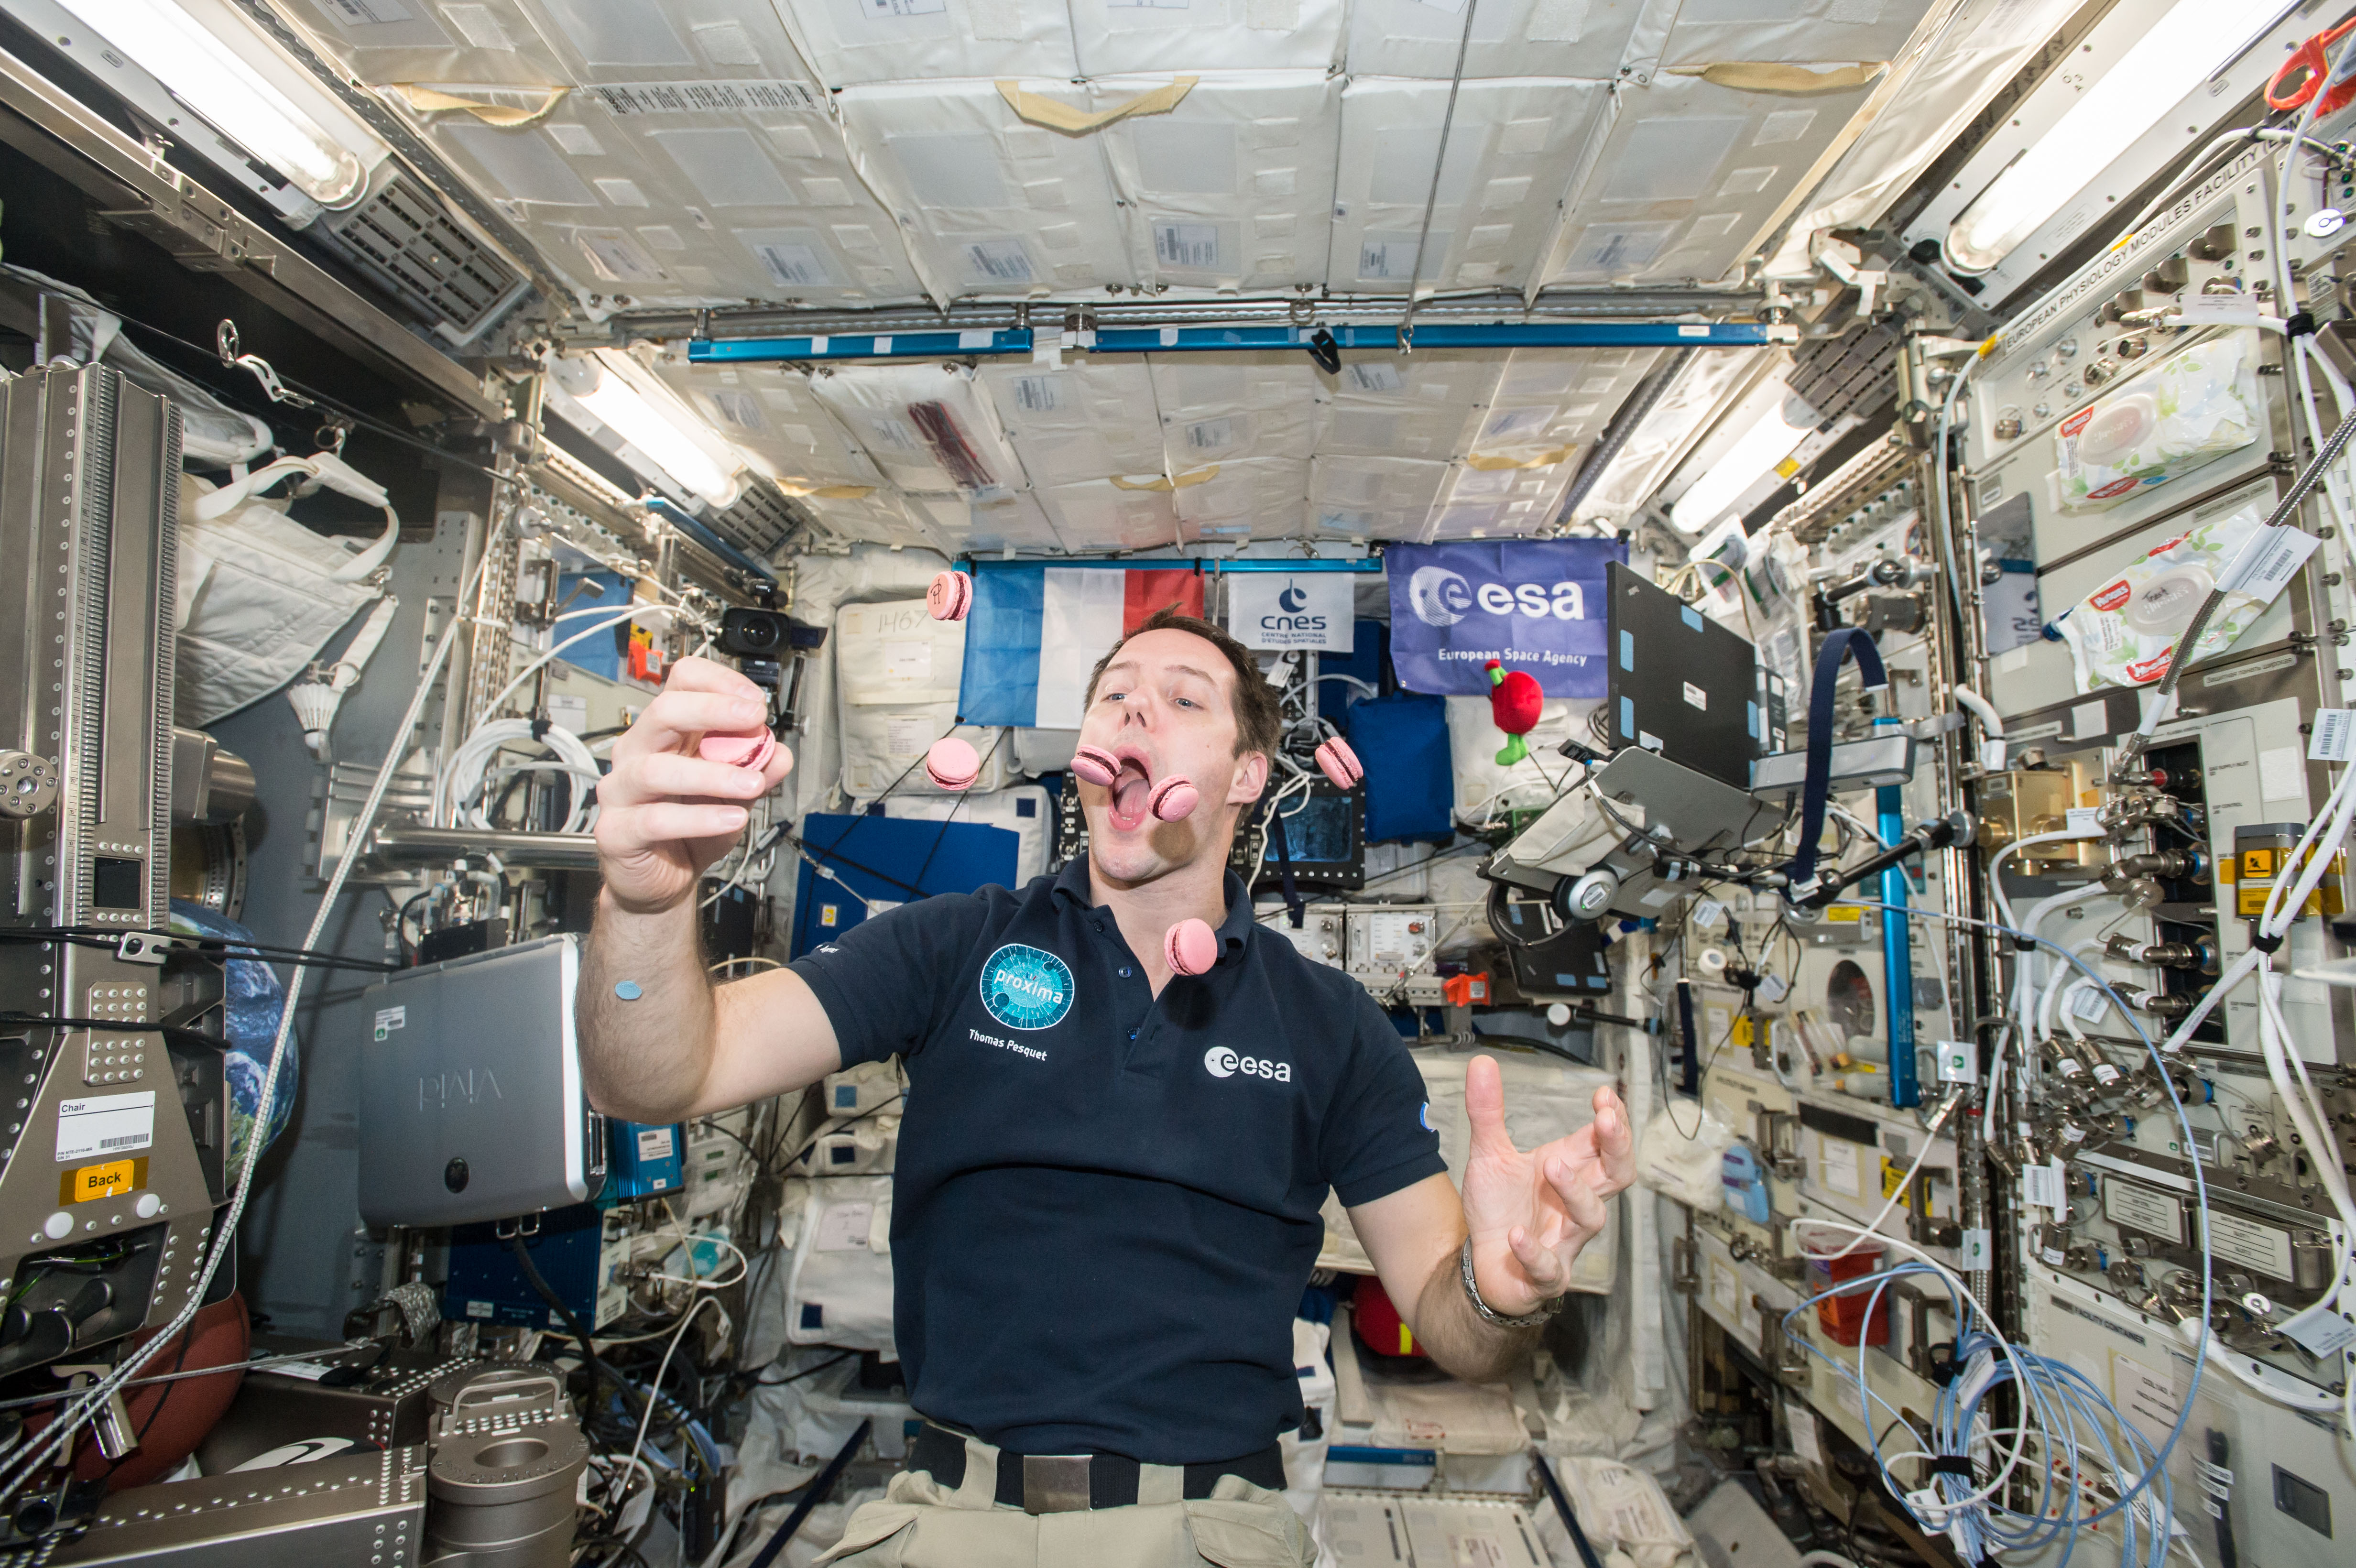 Деньги на мкс. Кухня на МКС. Космонавт в космосе. Космонавт в невесомости. Космонавты на космической станции.